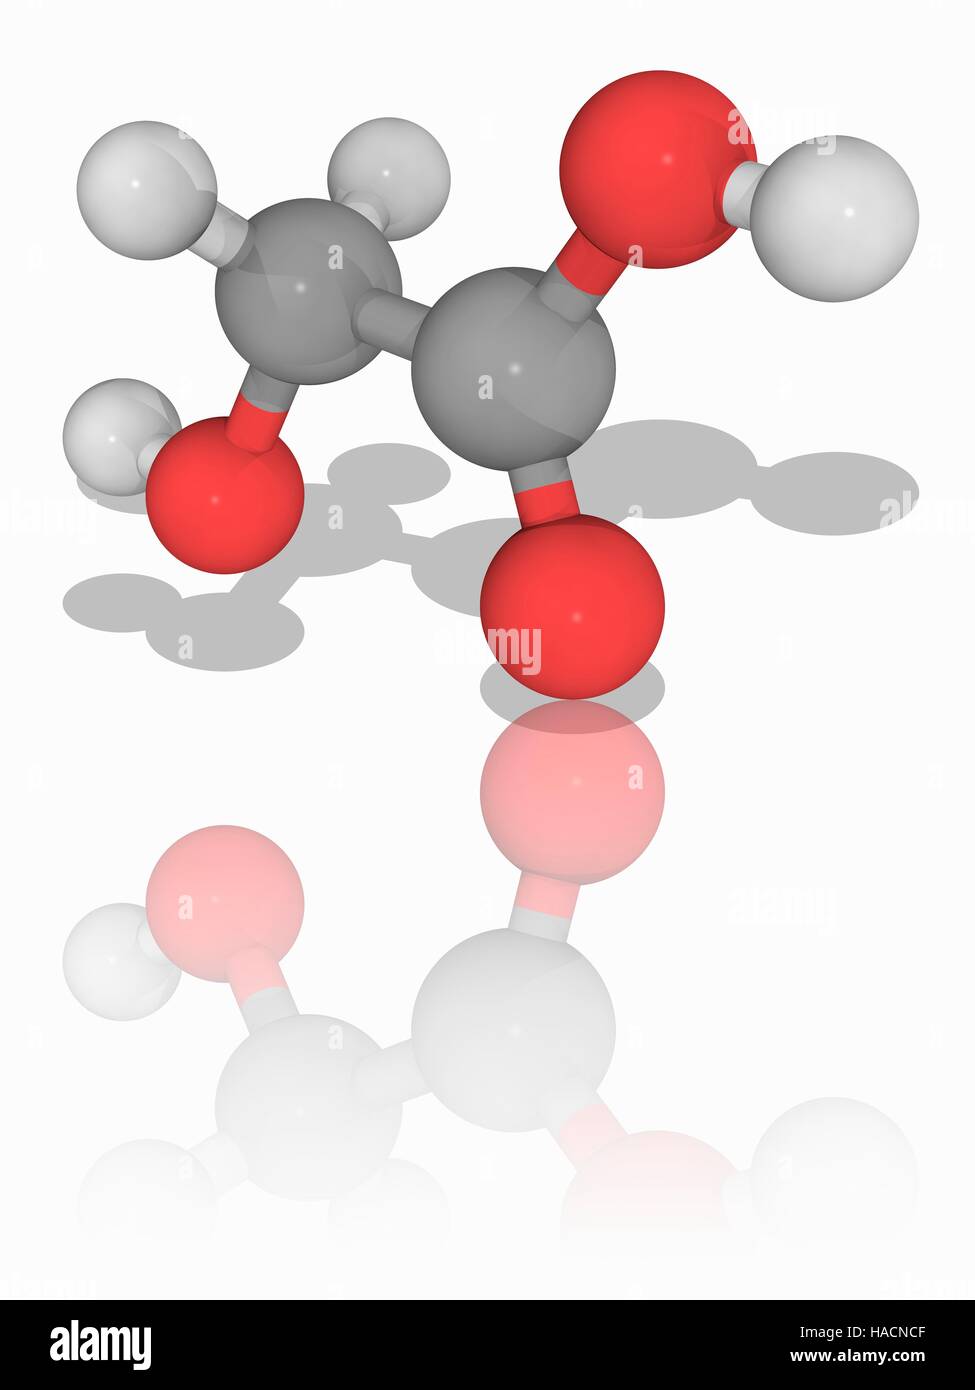 Acido idrossiacetico. Il modello molecolare di acido idrossiacetico (C2.H4.O3), il più piccolo di alfa-idrossi acido (AHA), noto anche come acido glicolico. Questo solido cristallino composto chimico è utilizzato in prodotti per la cura della pelle. Gli atomi sono rappresentati da sfere e sono codificati a colori: carbonio (grigio), Idrogeno (bianco) e ossigeno (rosso). Illustrazione. Foto Stock